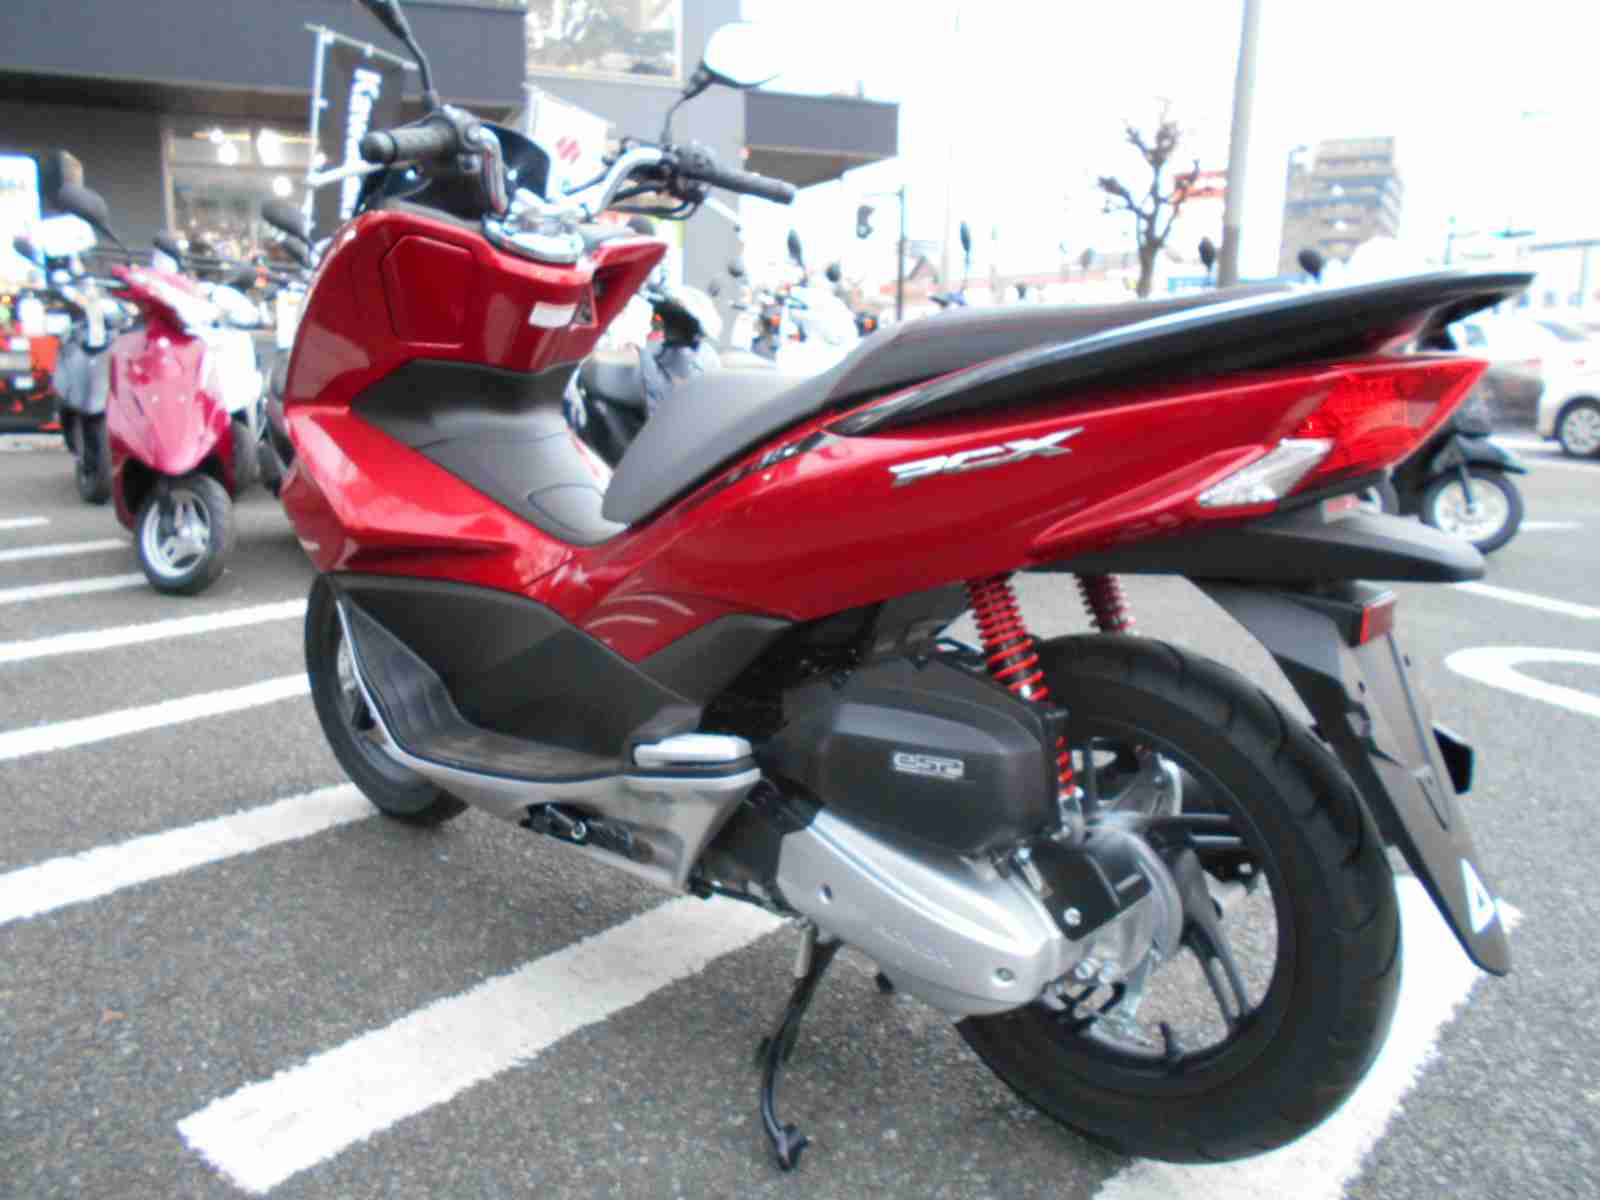 ホンダ Pcx ツートン バイク探し U Media ユーメディア 中古バイク 新車バイク探しの決定版 神奈川 東京でバイク探すならユーメディア